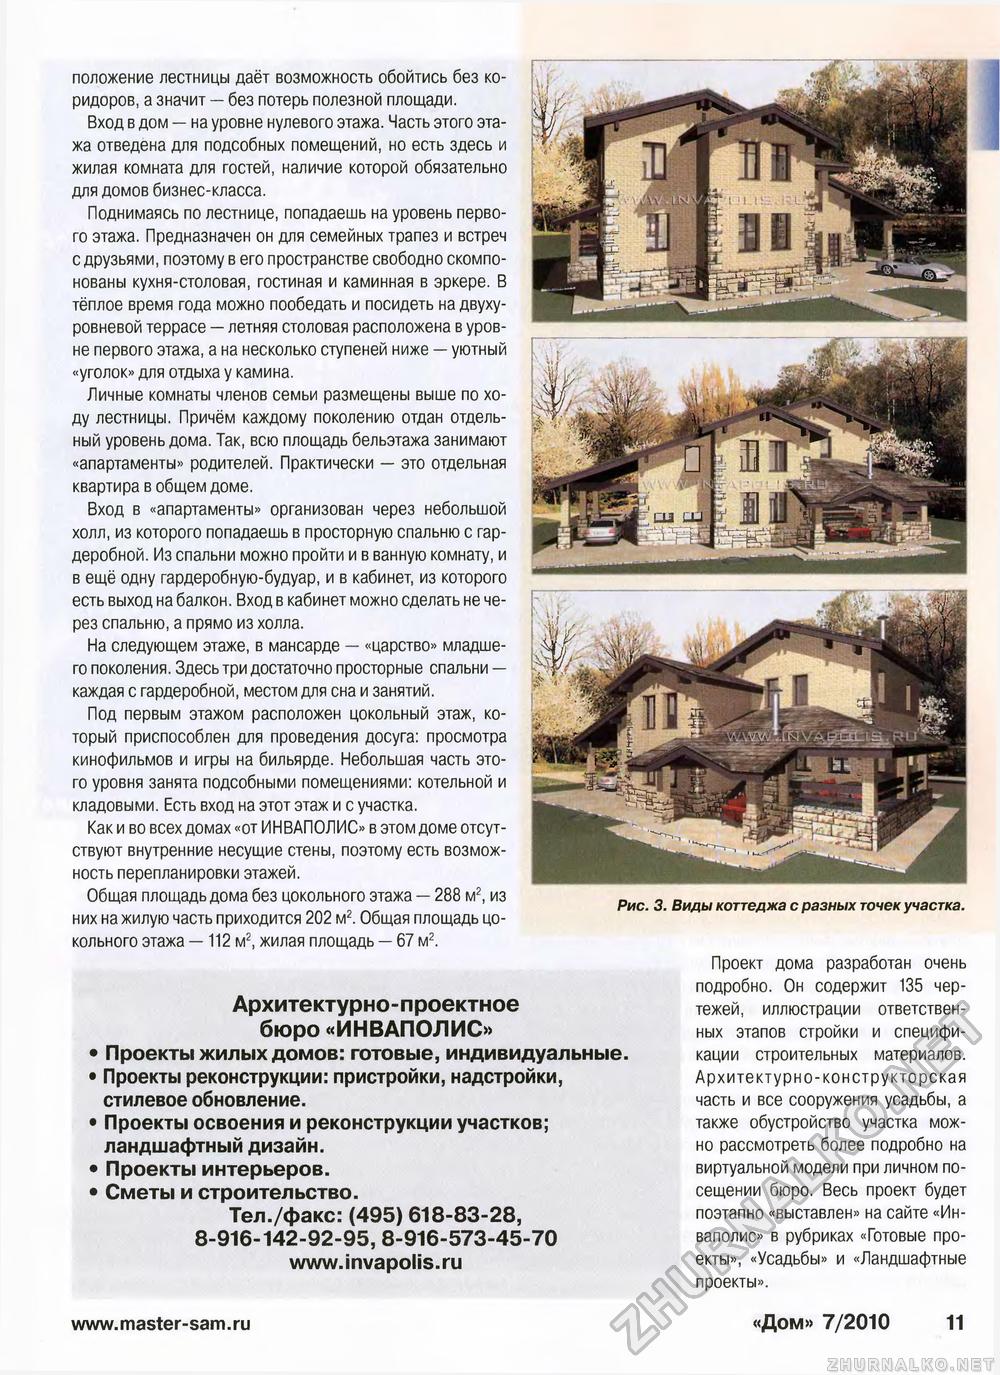 Дом 2010-07, страница 11